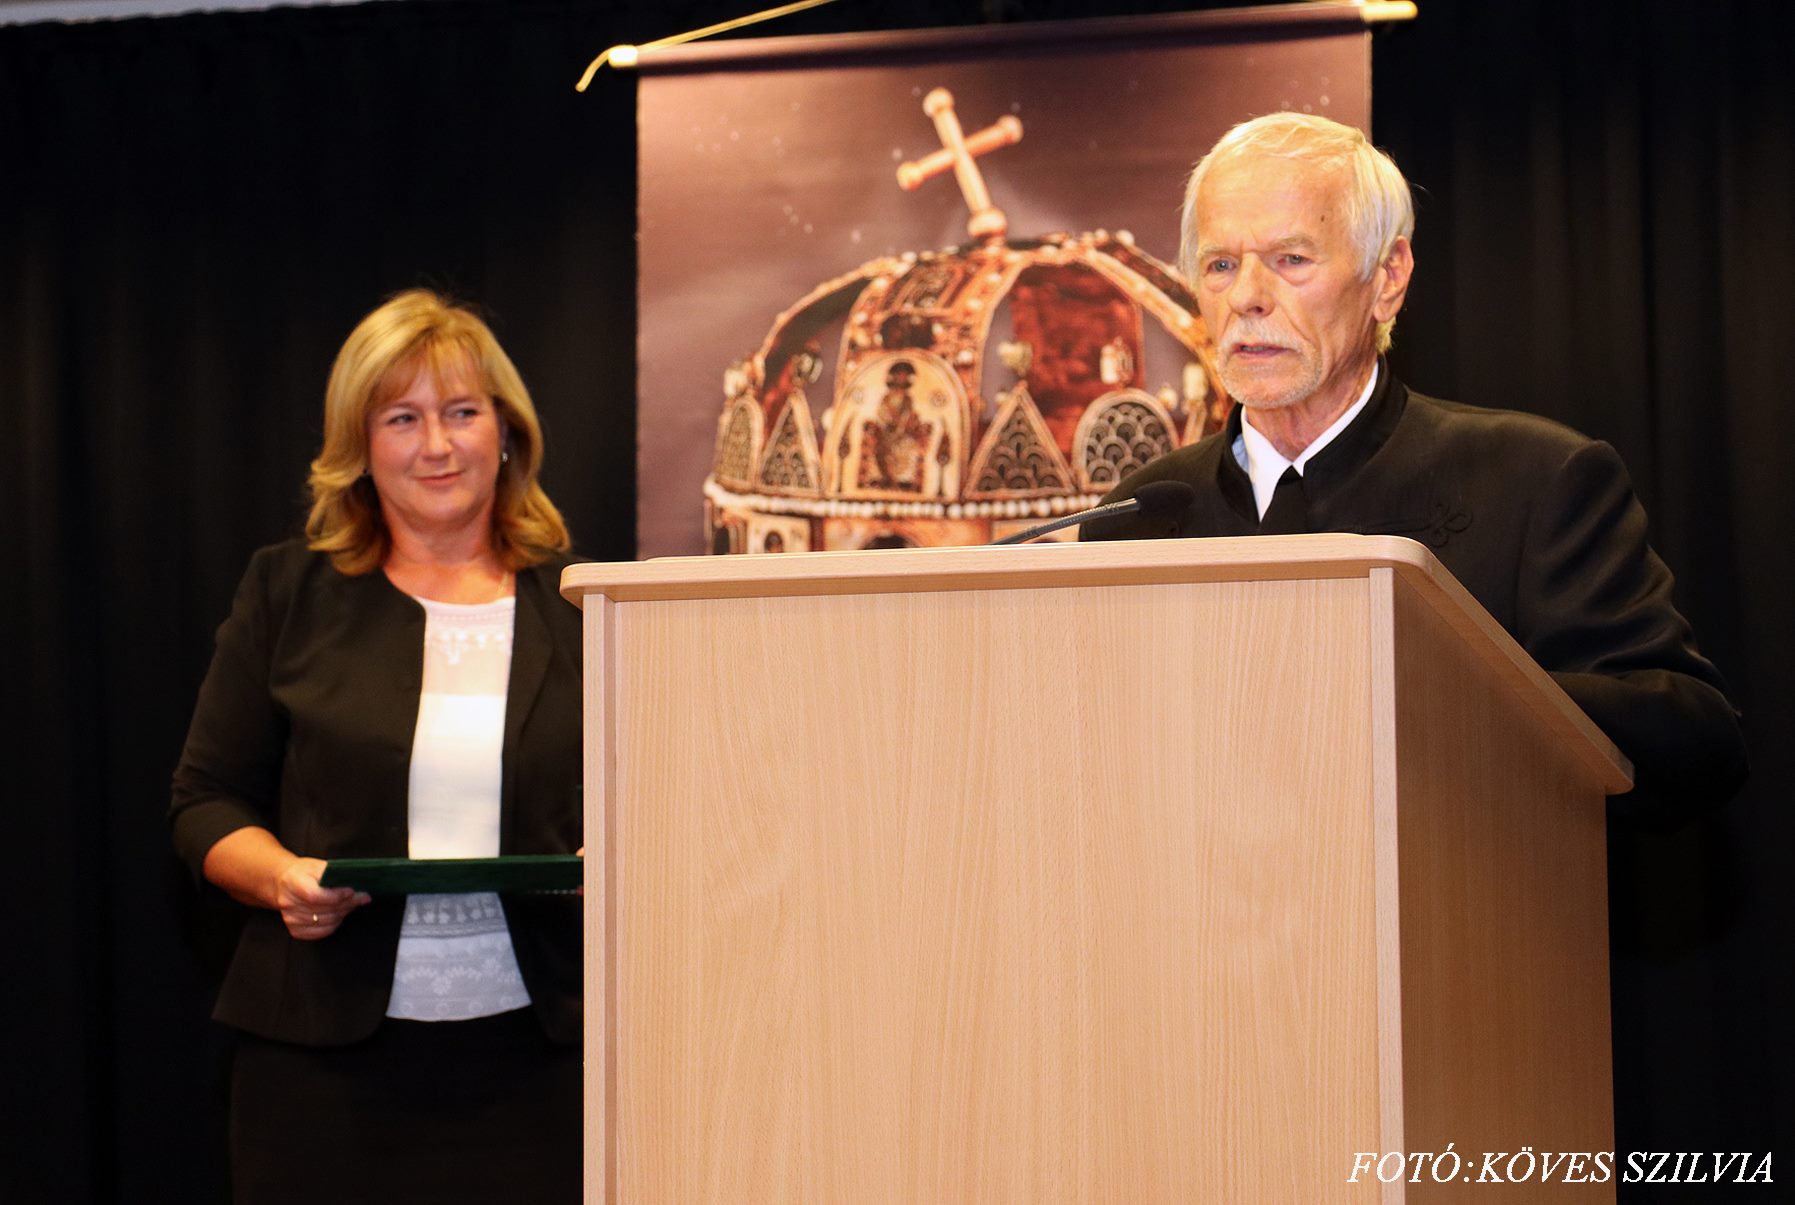 Janits Béla a díj átadása után megköszöni a laudációt 2018. augusztus 20.